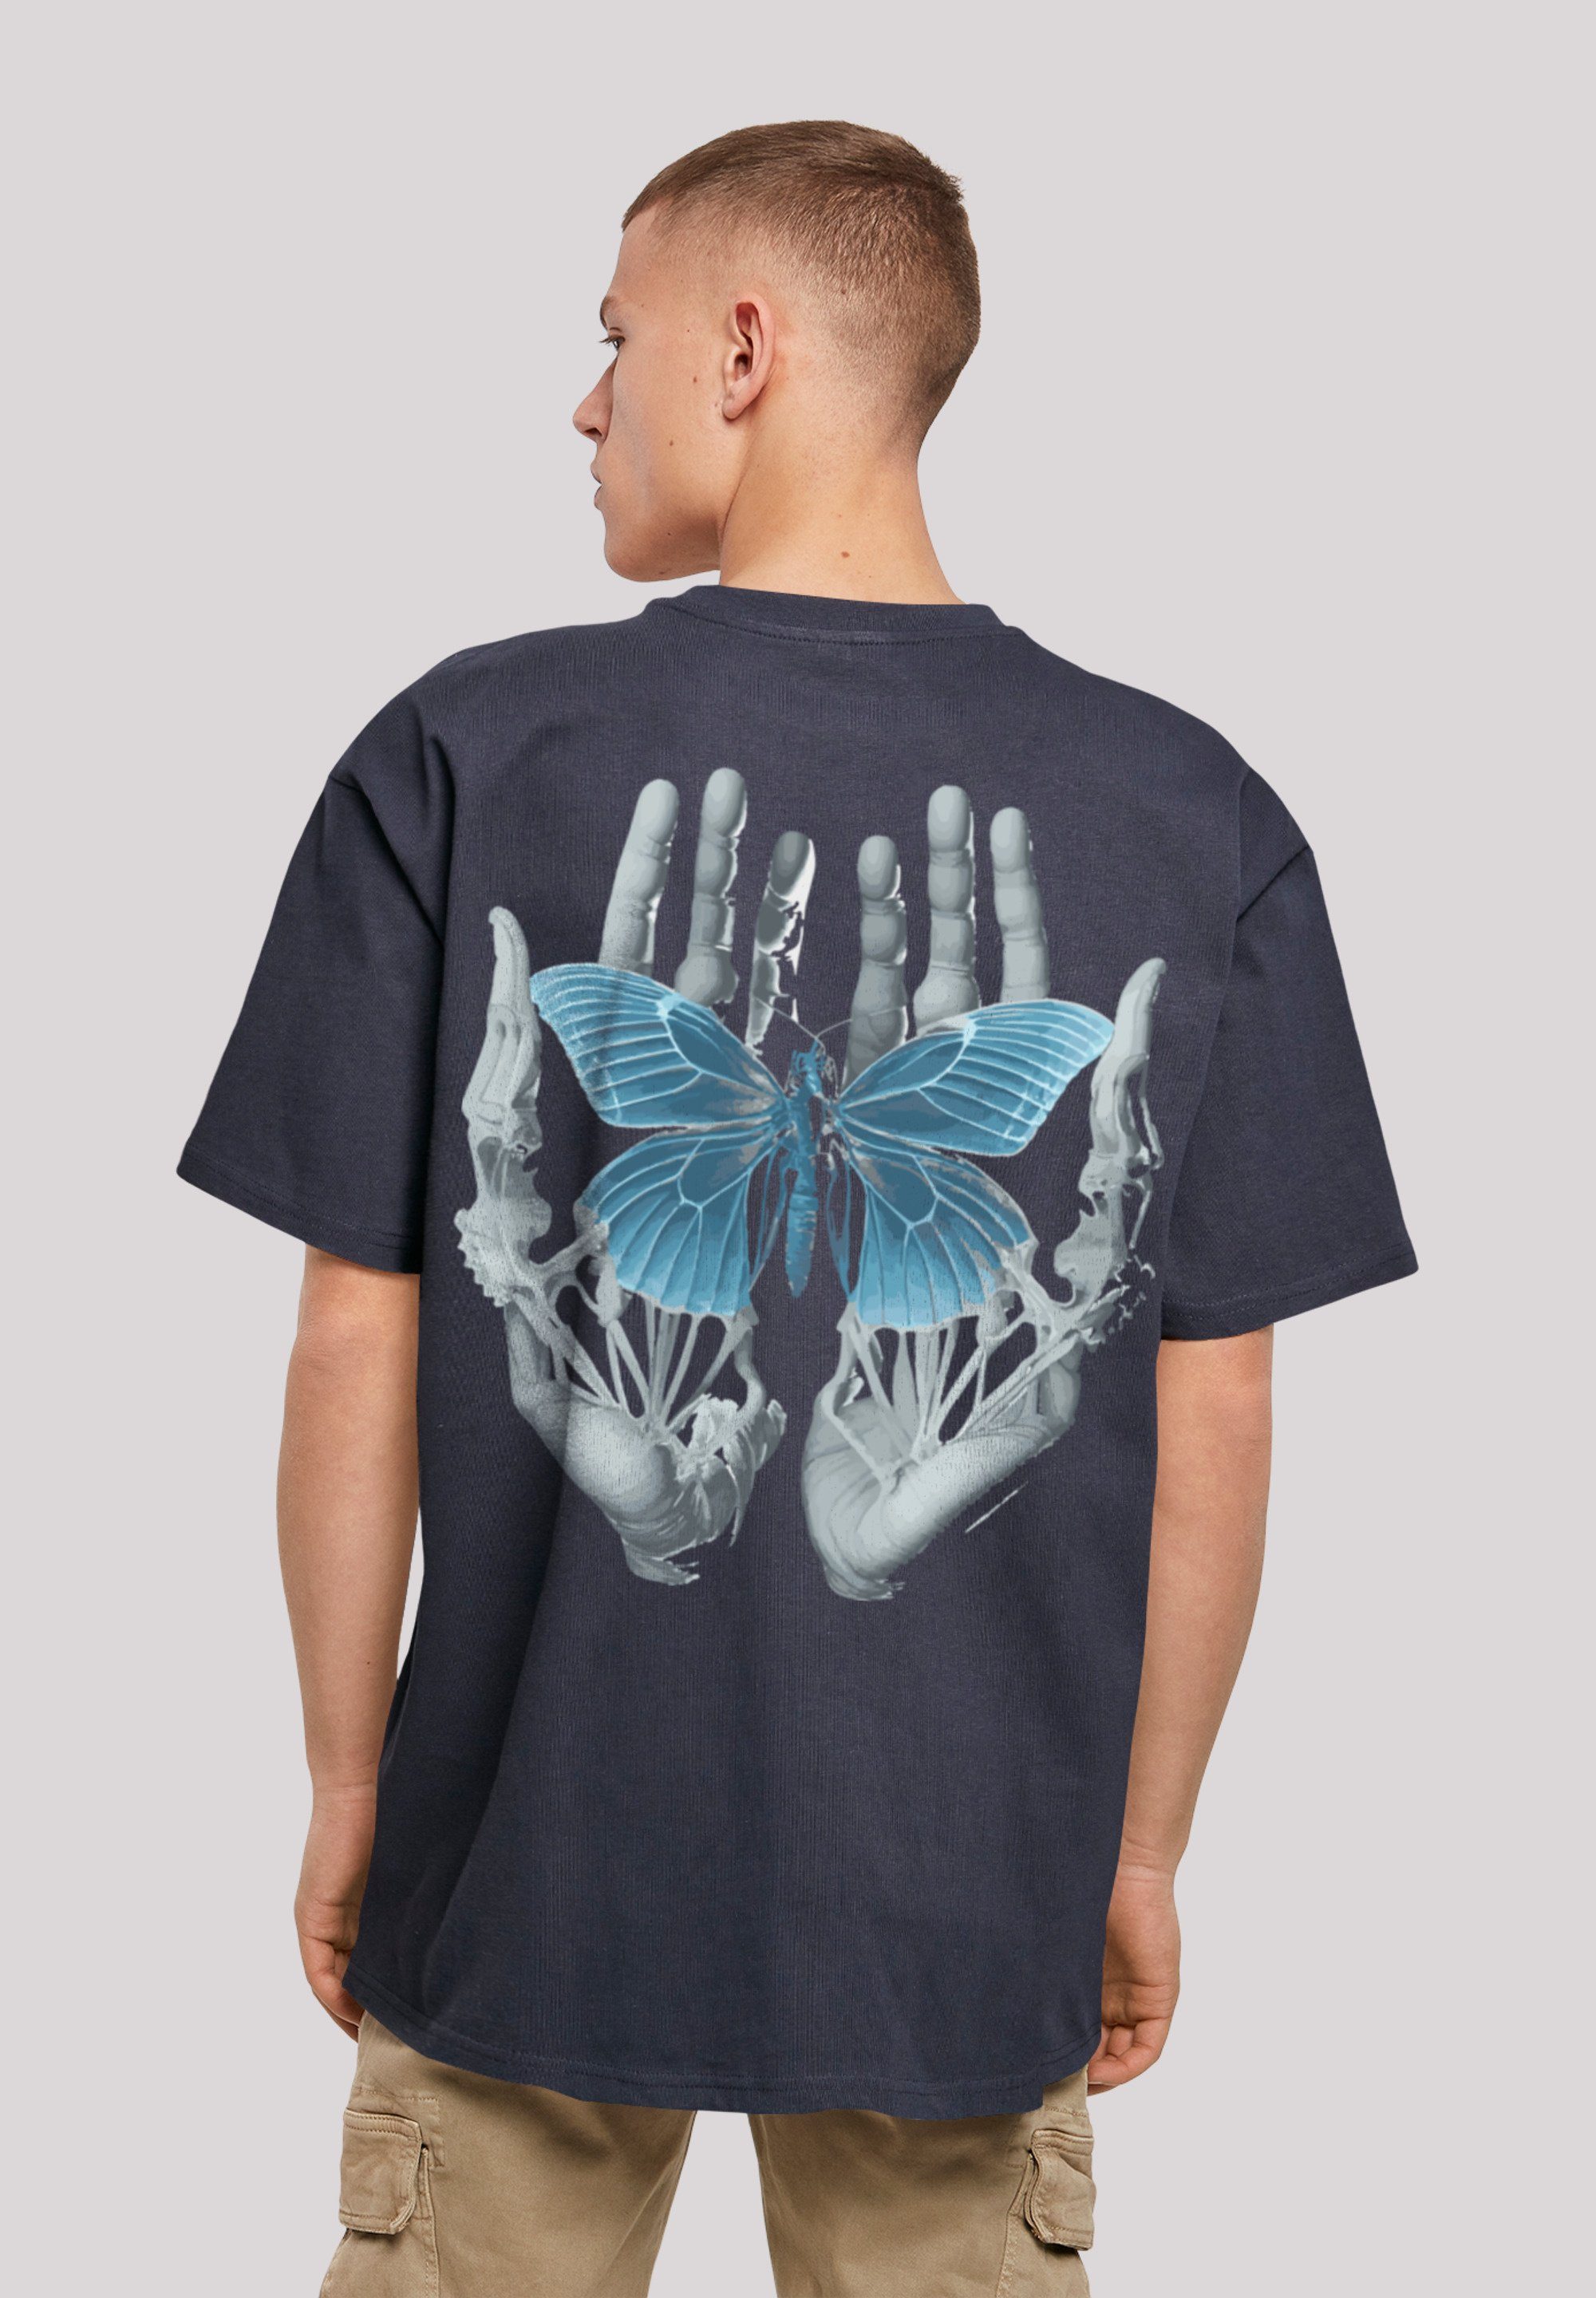 F4NT4STIC T-Shirt aus, Größe Schmetterling Hände Fällt kleiner eine Print, Skelett weit bitte bestellen